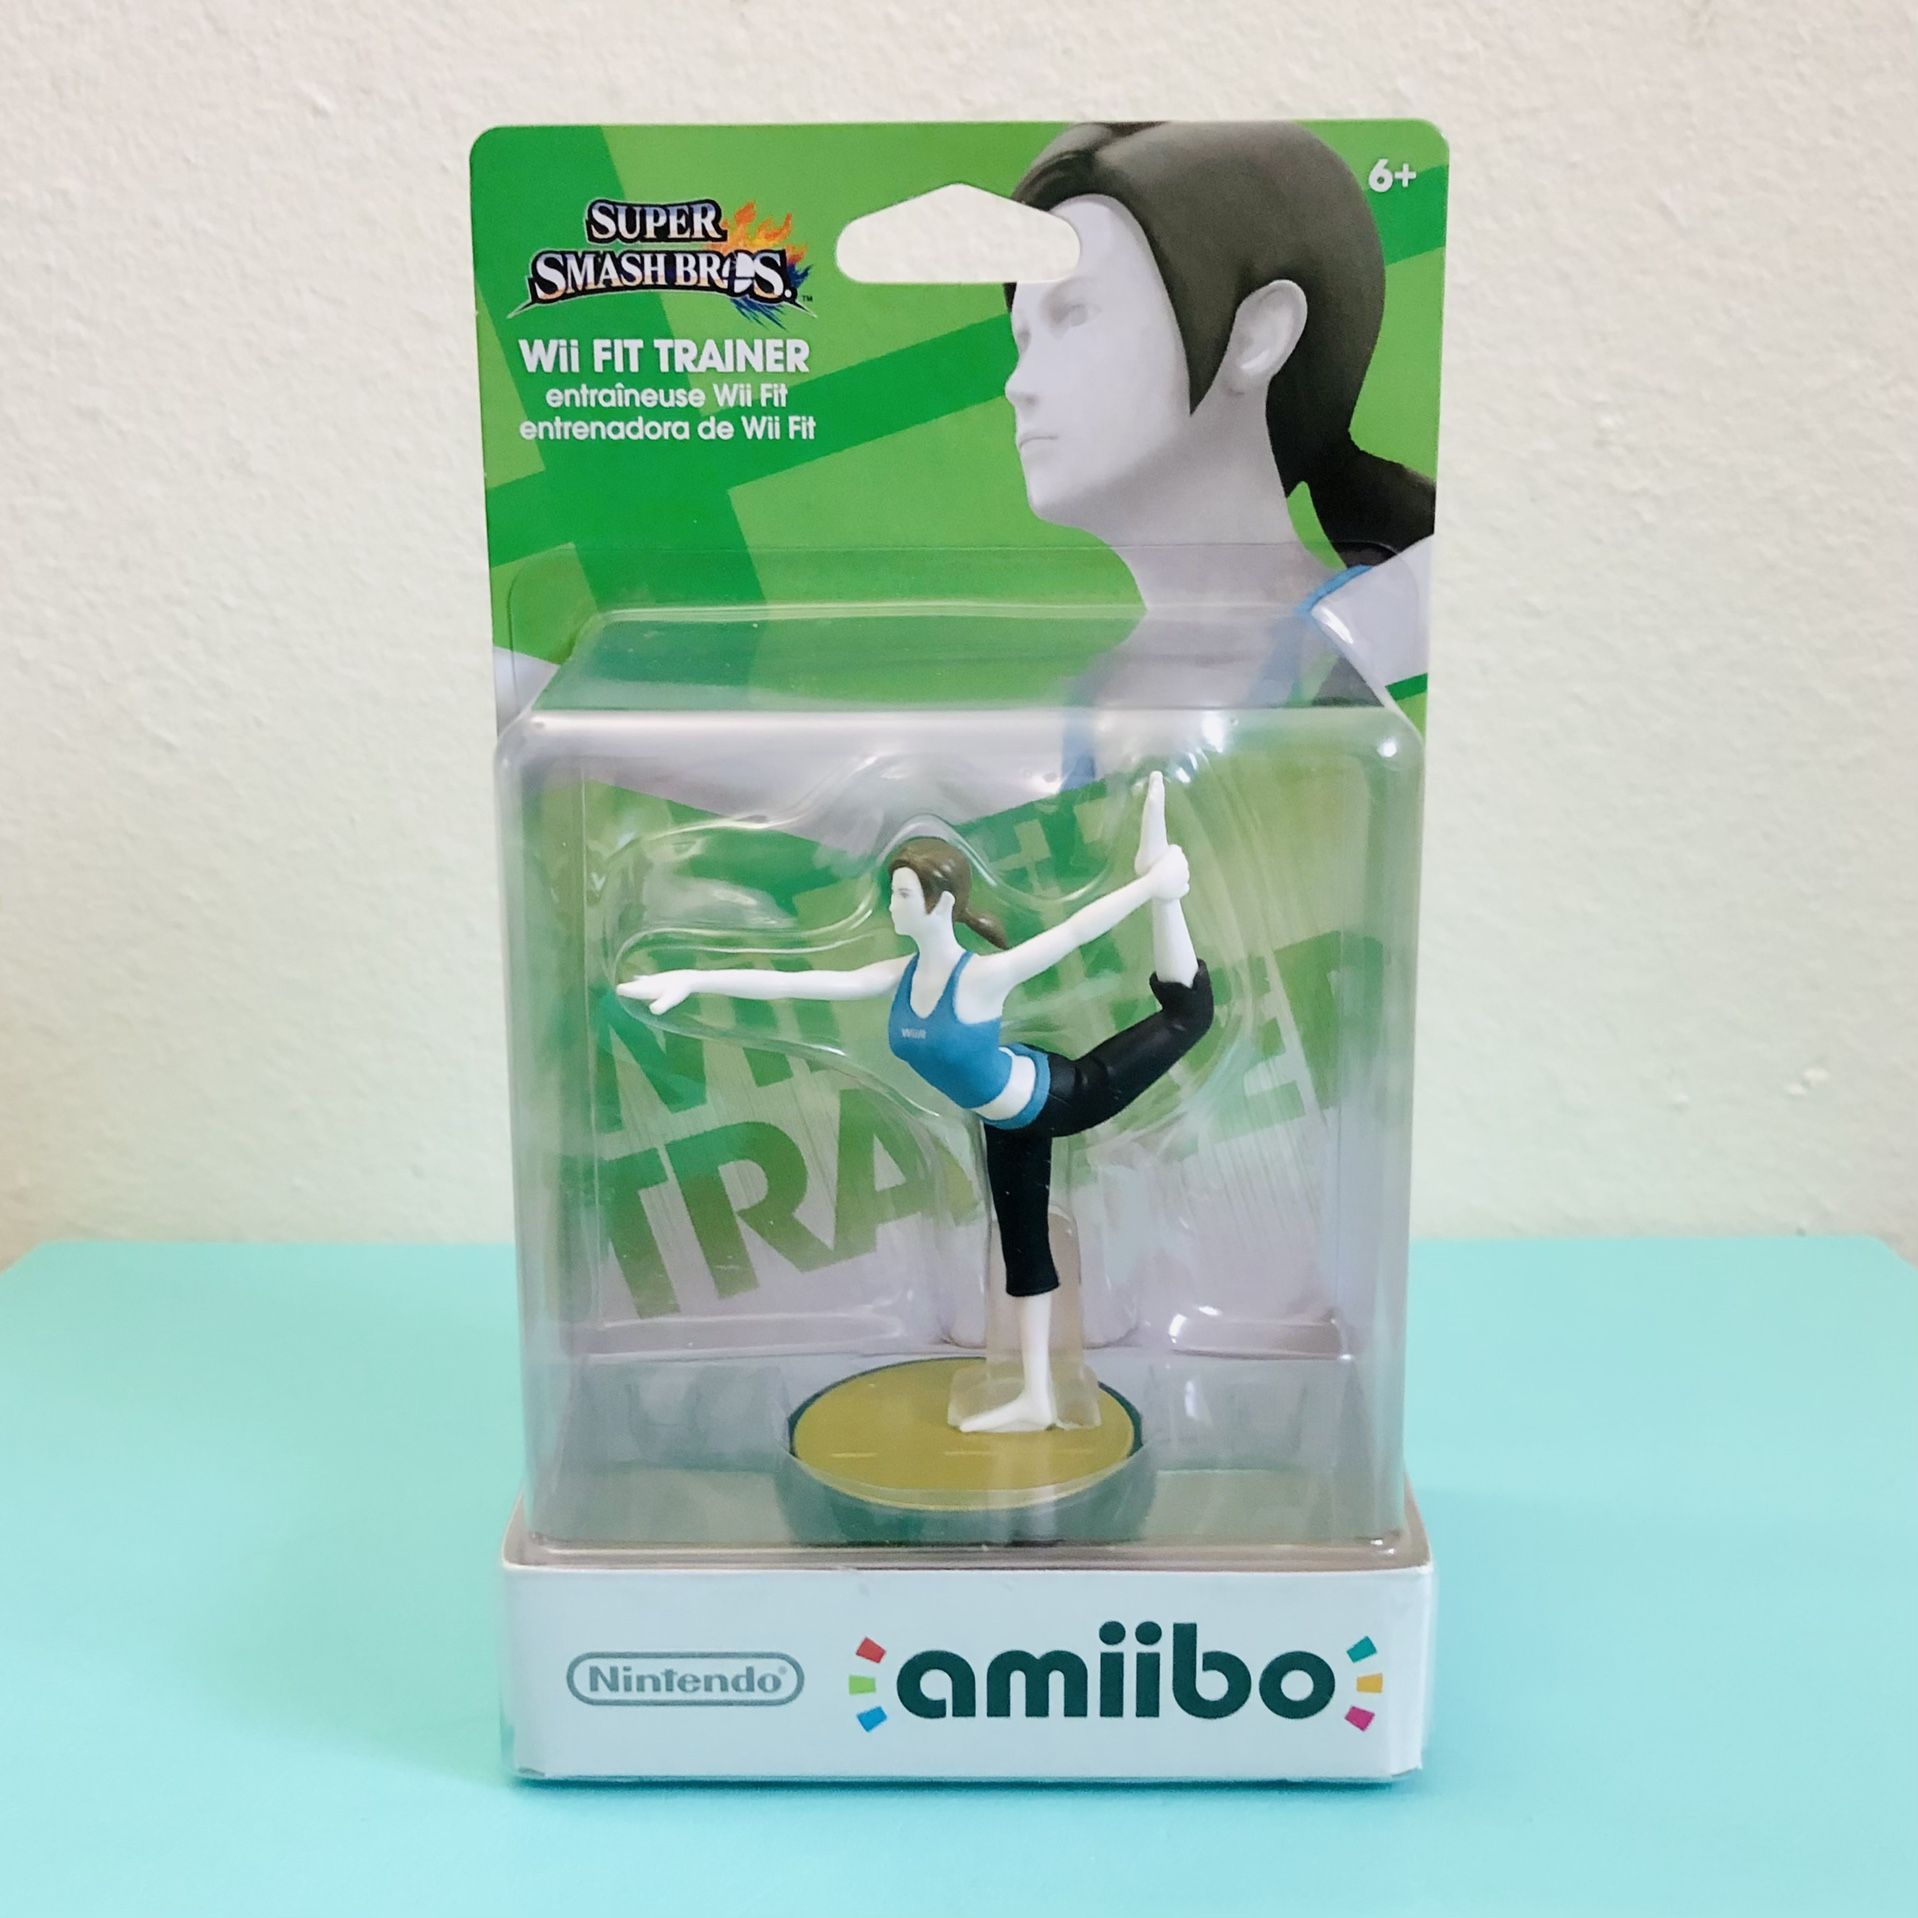 Super Smash Bros. Amiibo Figure - Wii Fit Trainer